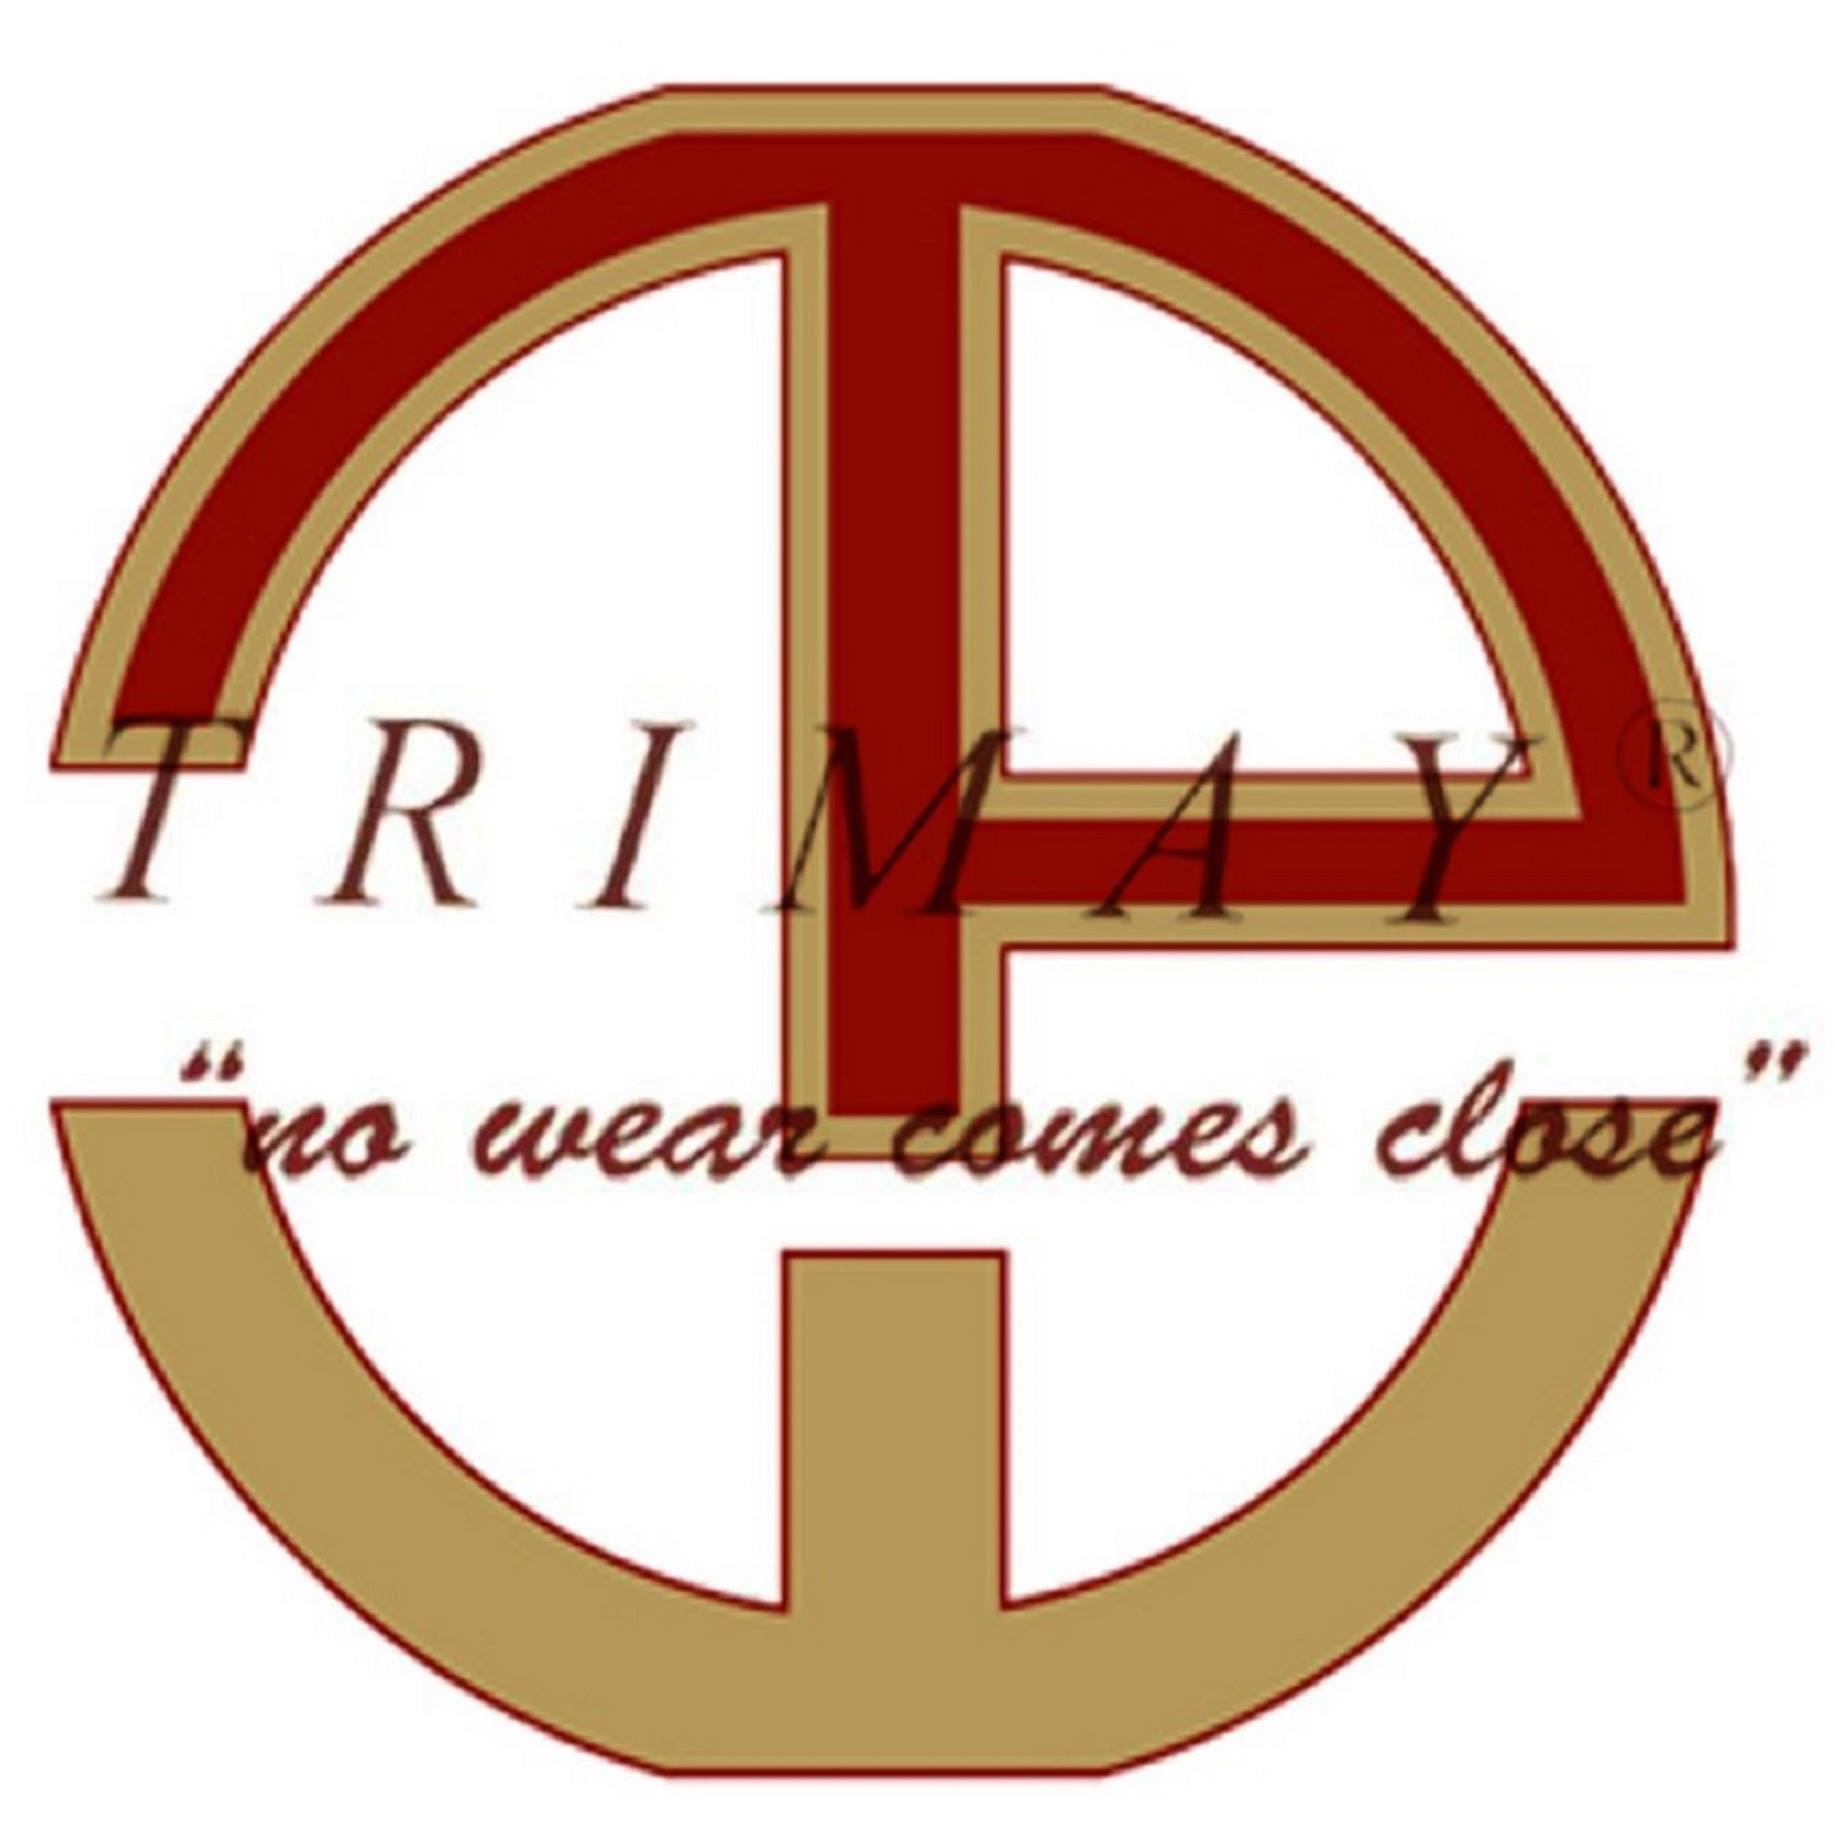 Trimay Wear Plate Ltd logo